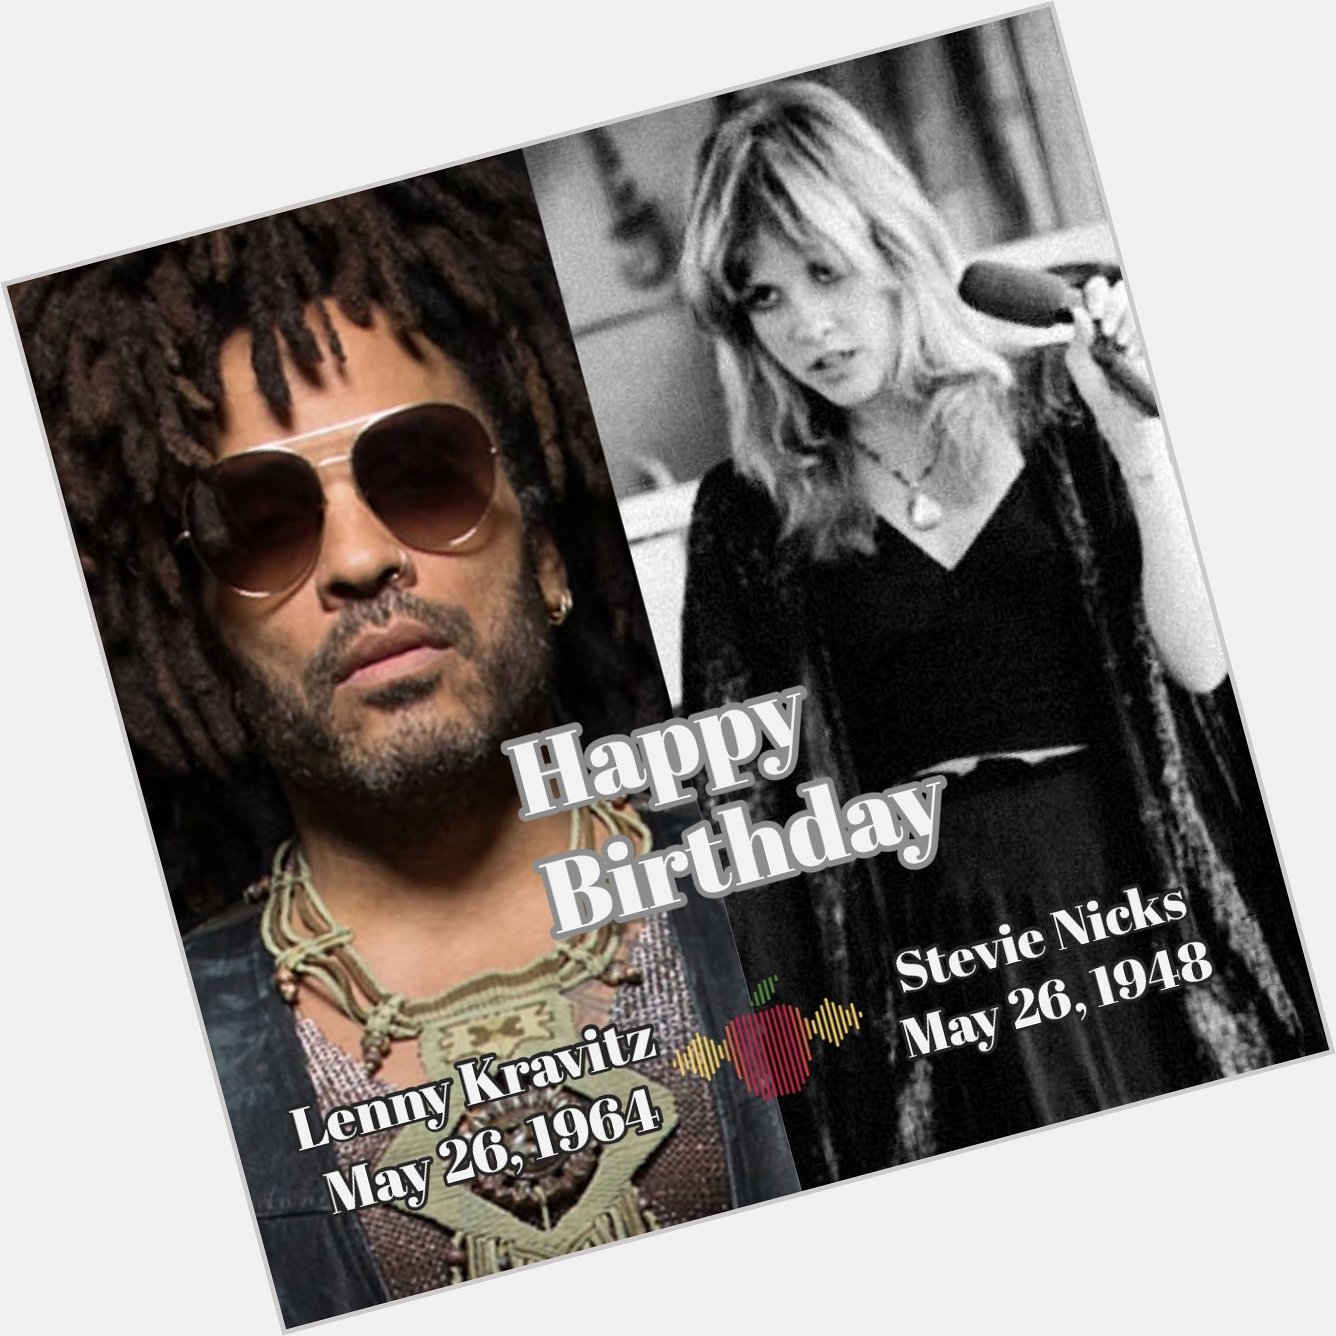 More iconic birthdays today

Happy Birthday Lenny Kravitz and Stevie Nicks 